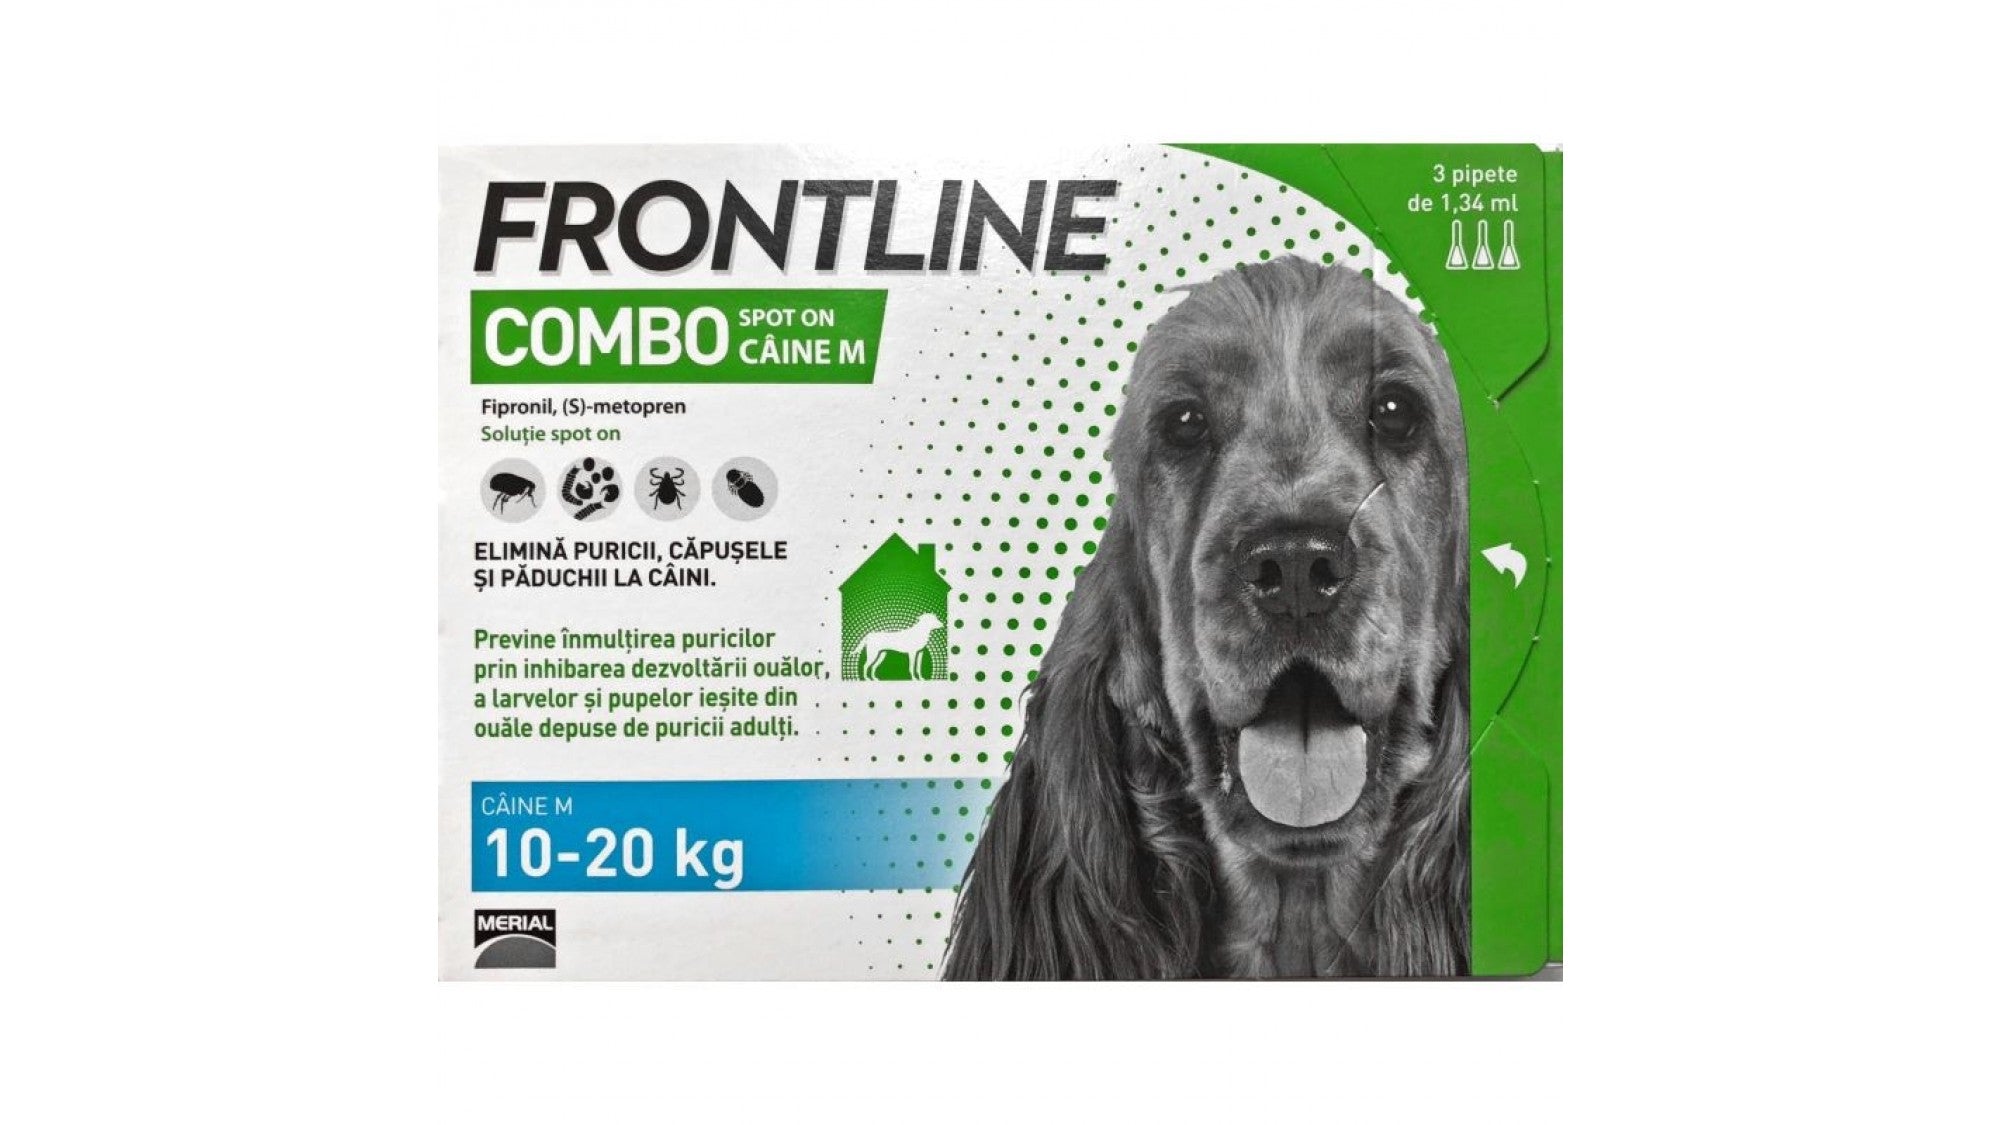 Frontline Combo M (10-20 kg) - 1 Pipeta - ALTVET - Farmacie veterinara - Pet Shop - Cosmetica